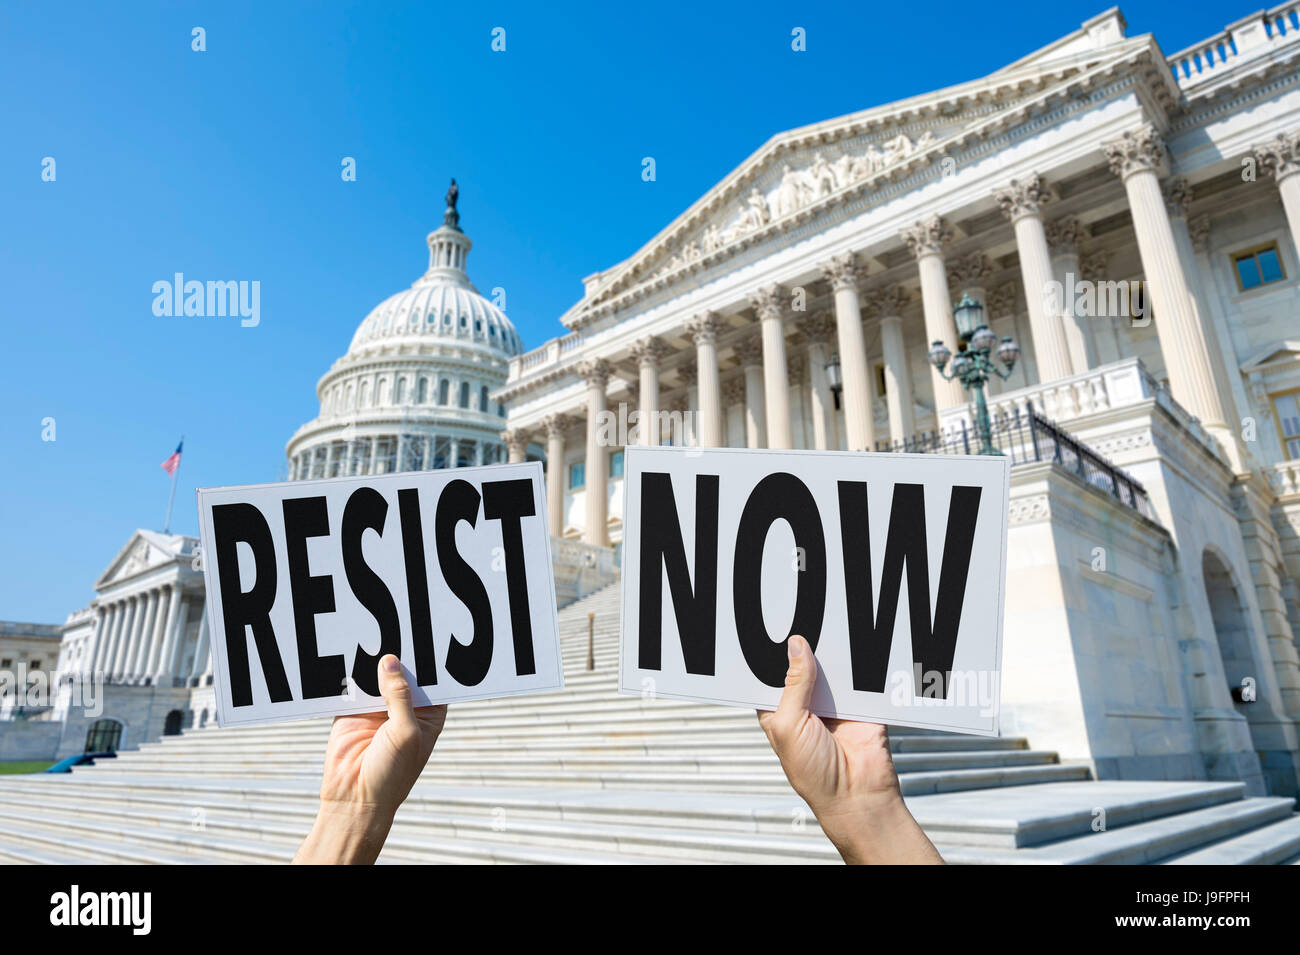 Las manos de los manifestantes en Washington, DC sosteniendo carteles instando a sus representantes en el Capitolio para resistir ahora, refiriéndose a la Casa Blanca Foto de stock